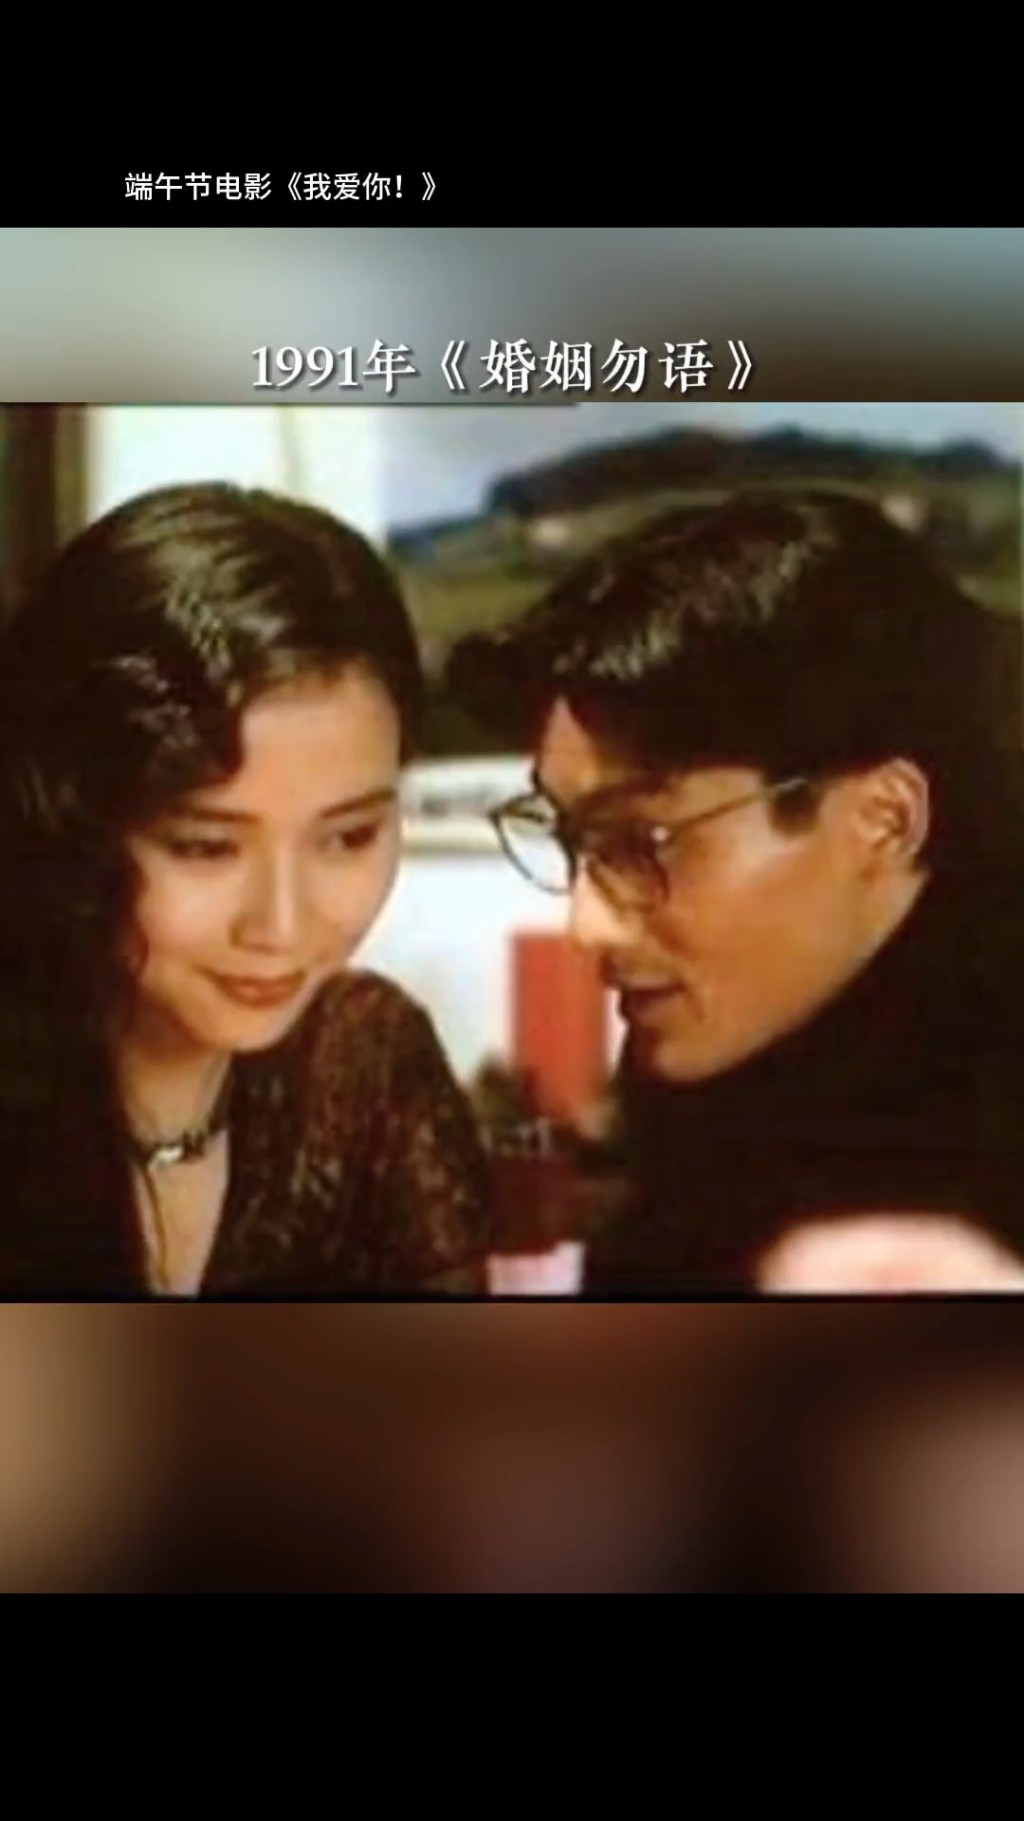 梁家輝與葉童曾合拍1991年電影《婚姻勿語》。